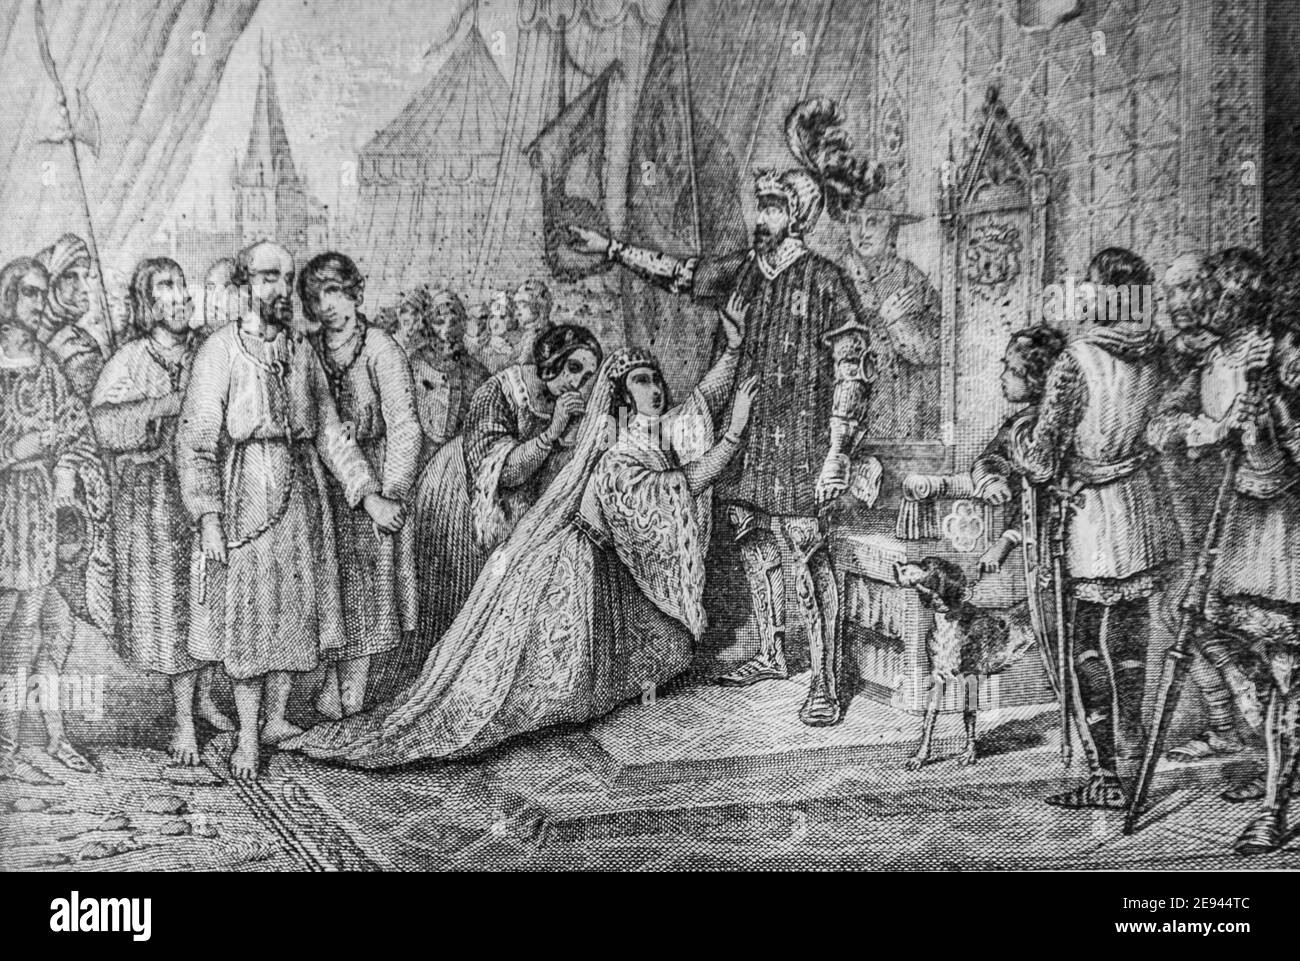 les Bourgeois de calais 1328-1340, histoire populaire de france par henri martin,editeur furne 1860 Stockfoto